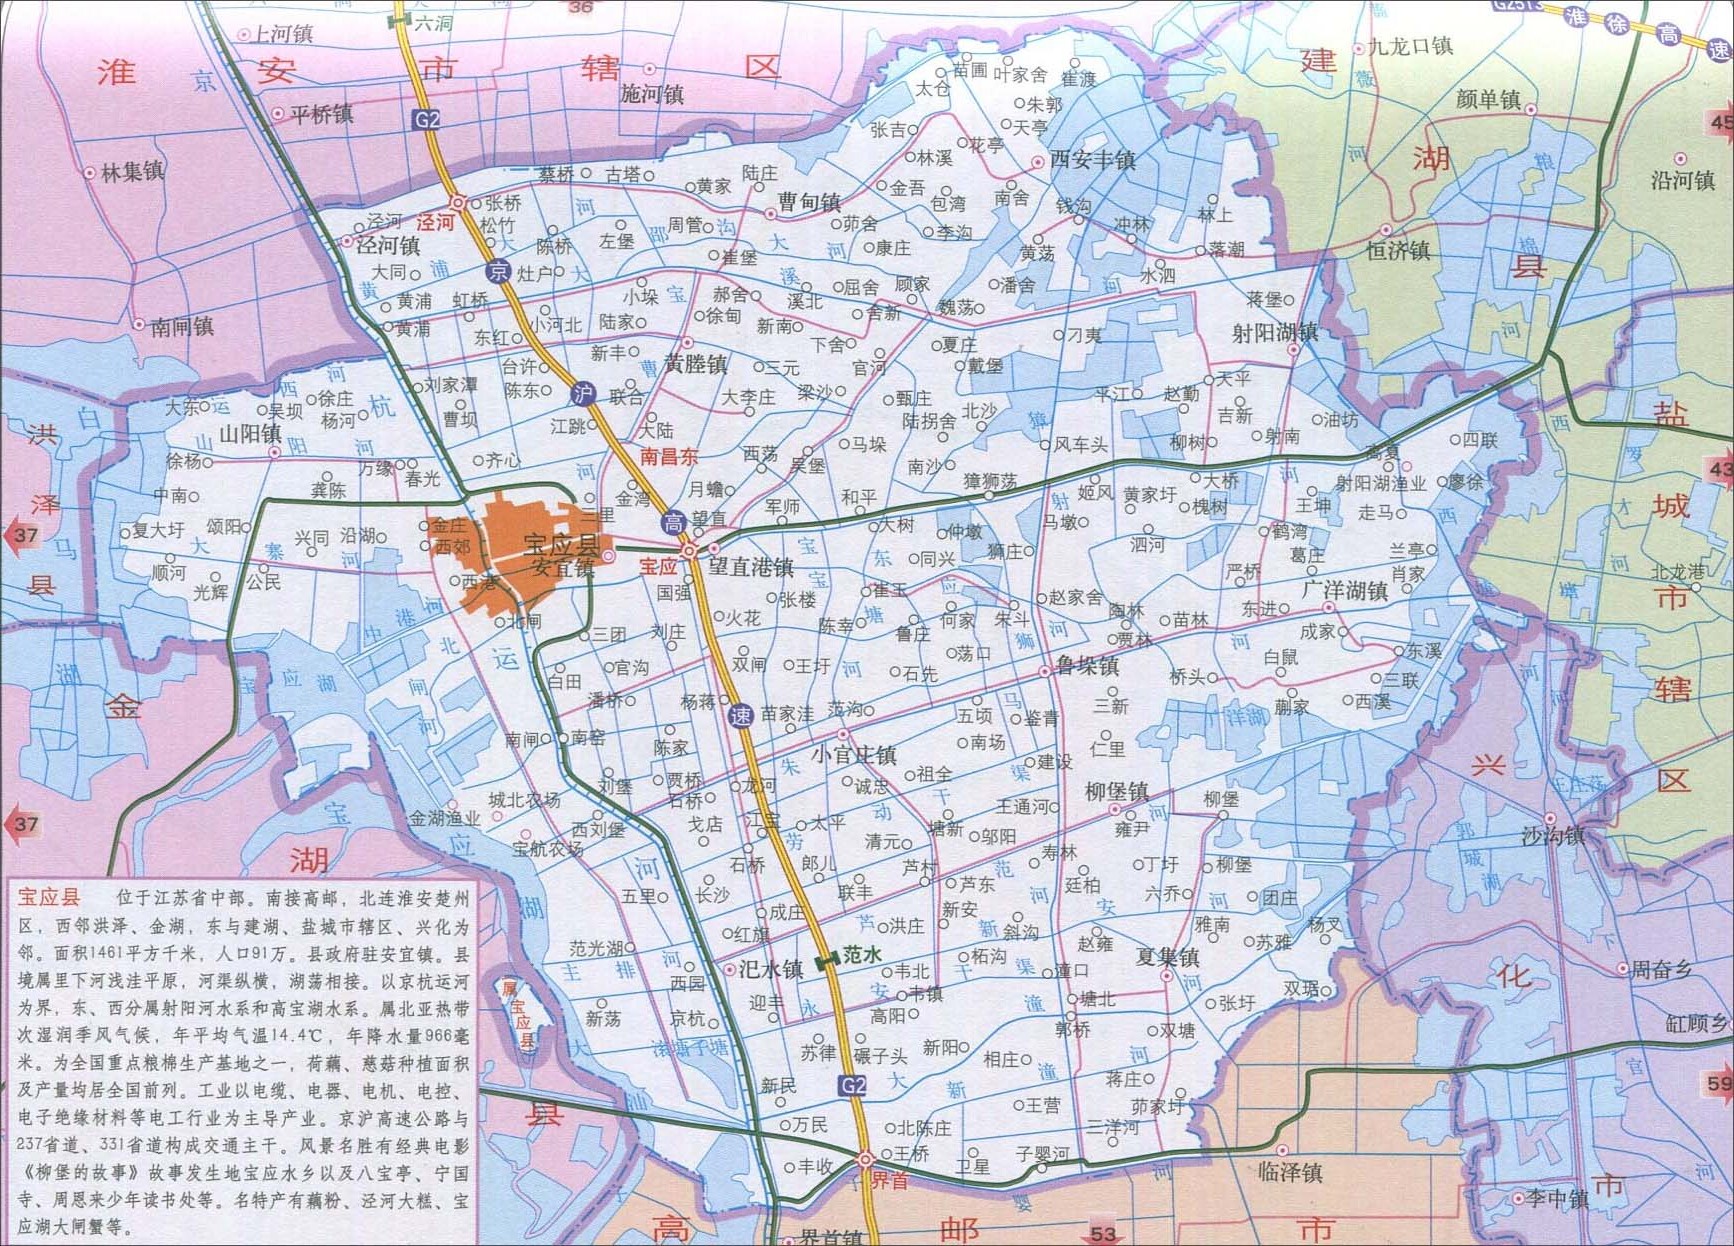 江苏 扬州市 >> 宝应县地图  栏目导航: 南京市  无锡市  徐州市图片